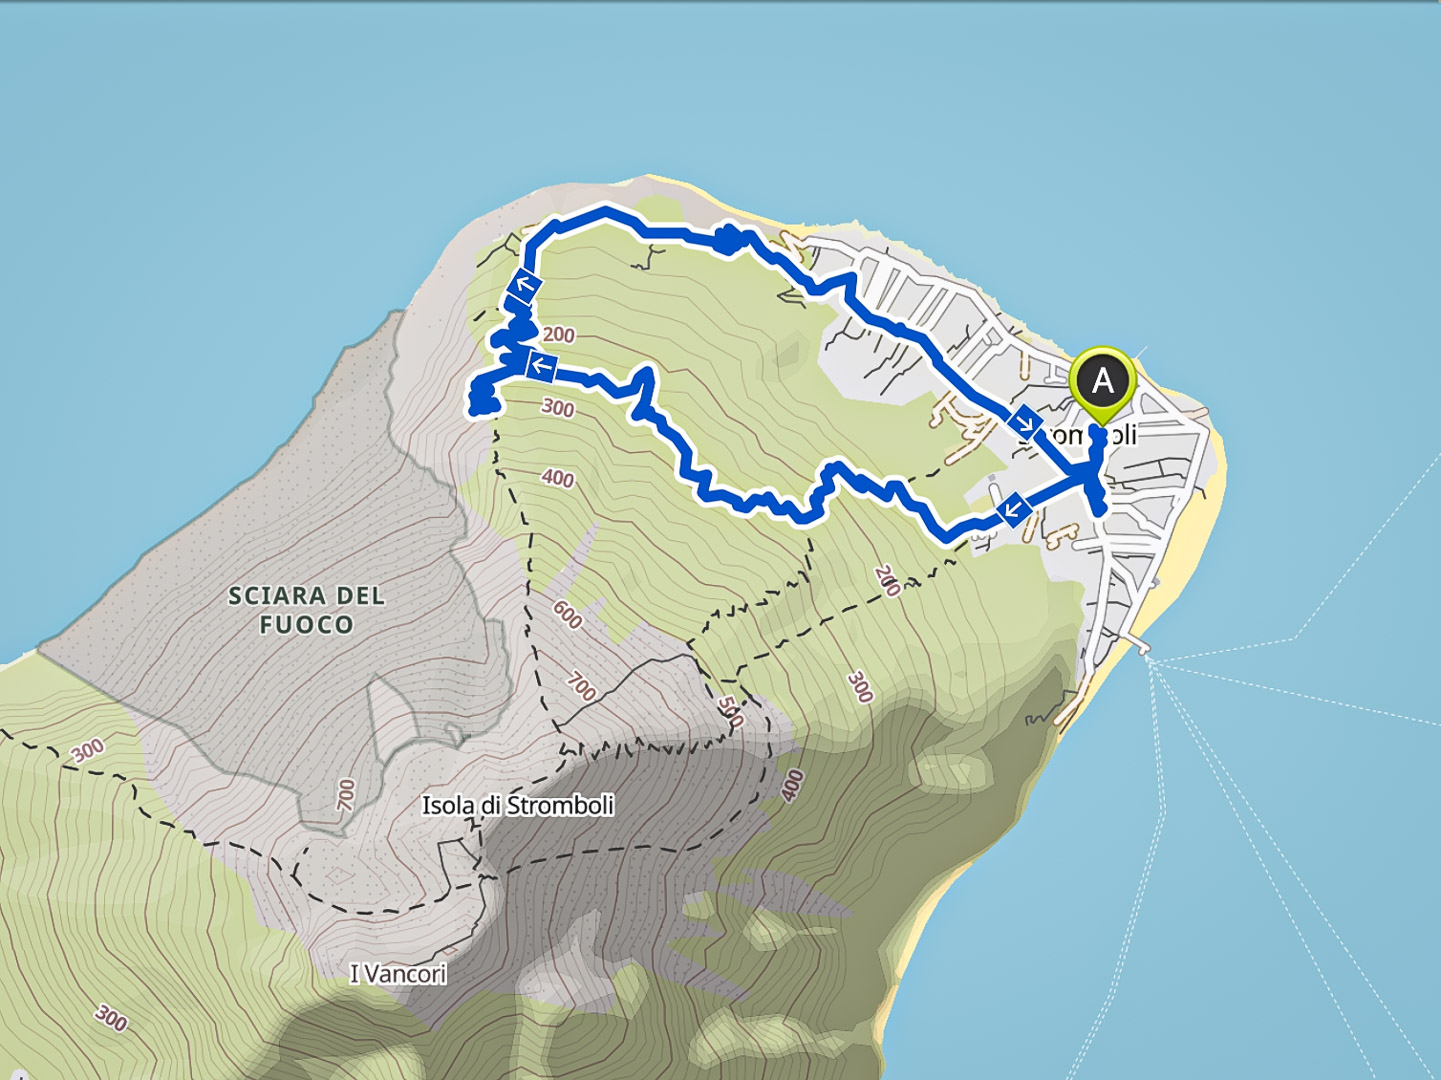 3.11.2020 - Nachtwanderung zur Sciara del Fuoco, Stromboli. 9 km